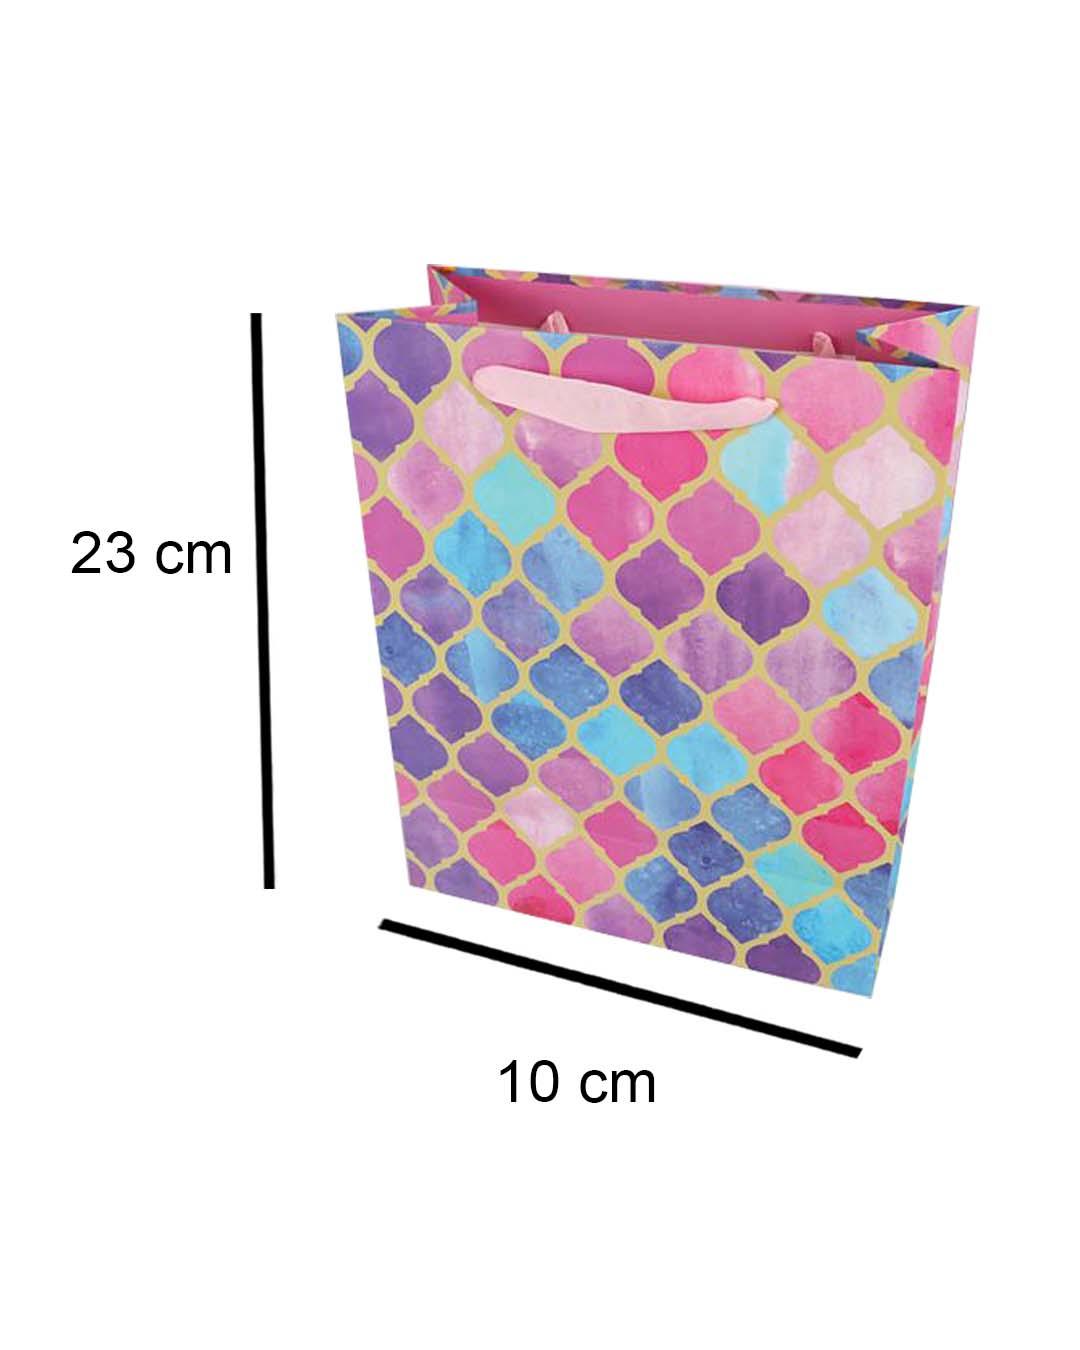 Buy ZOUK Multicolor Printed Large Tote Bag at Best Price @ Tata CLiQ